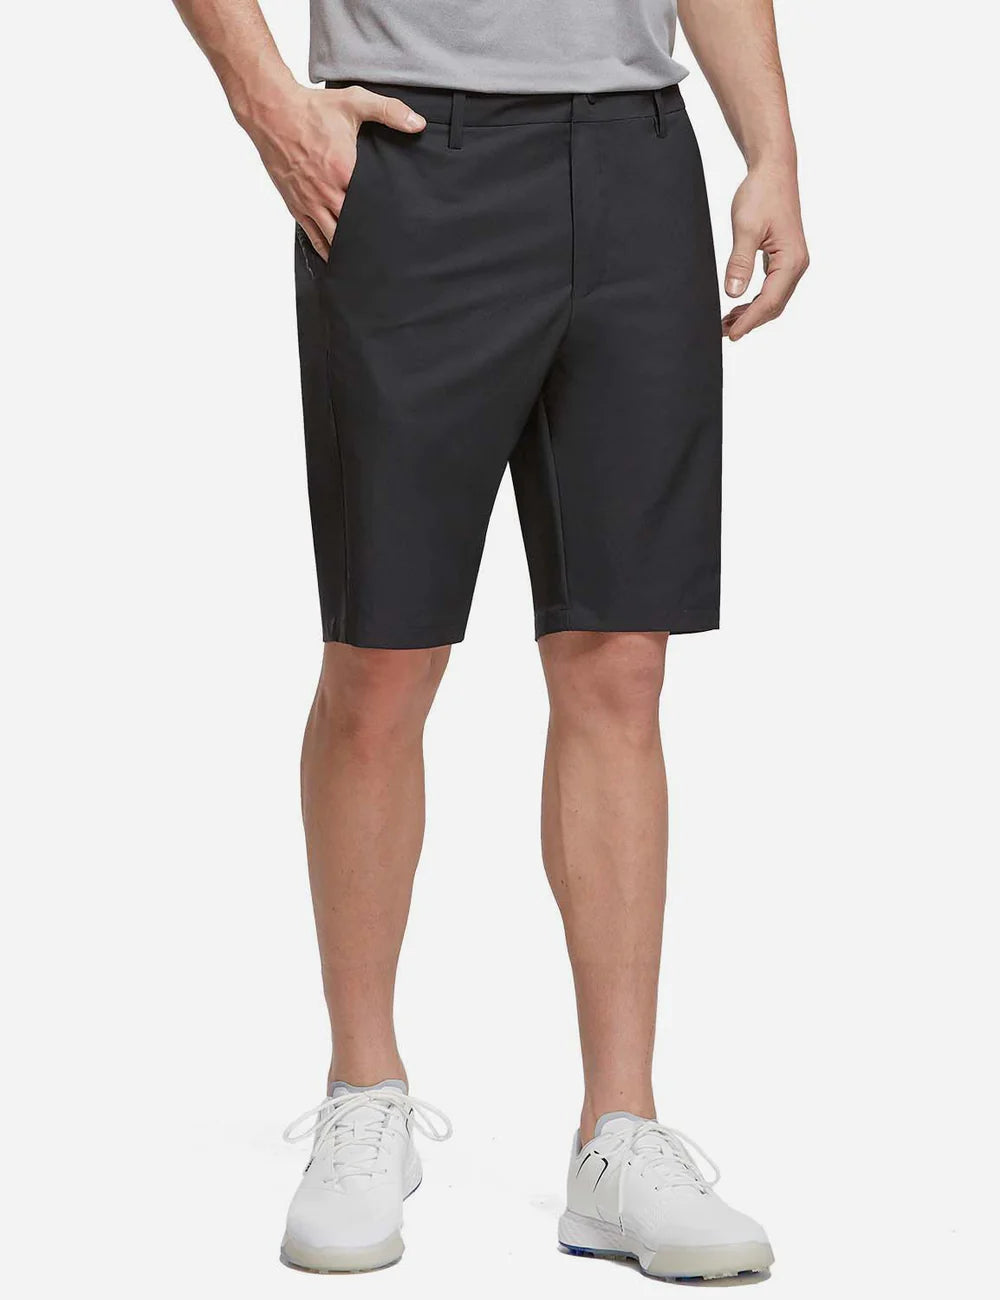 Baleaf UPF50+ Golf Shorts